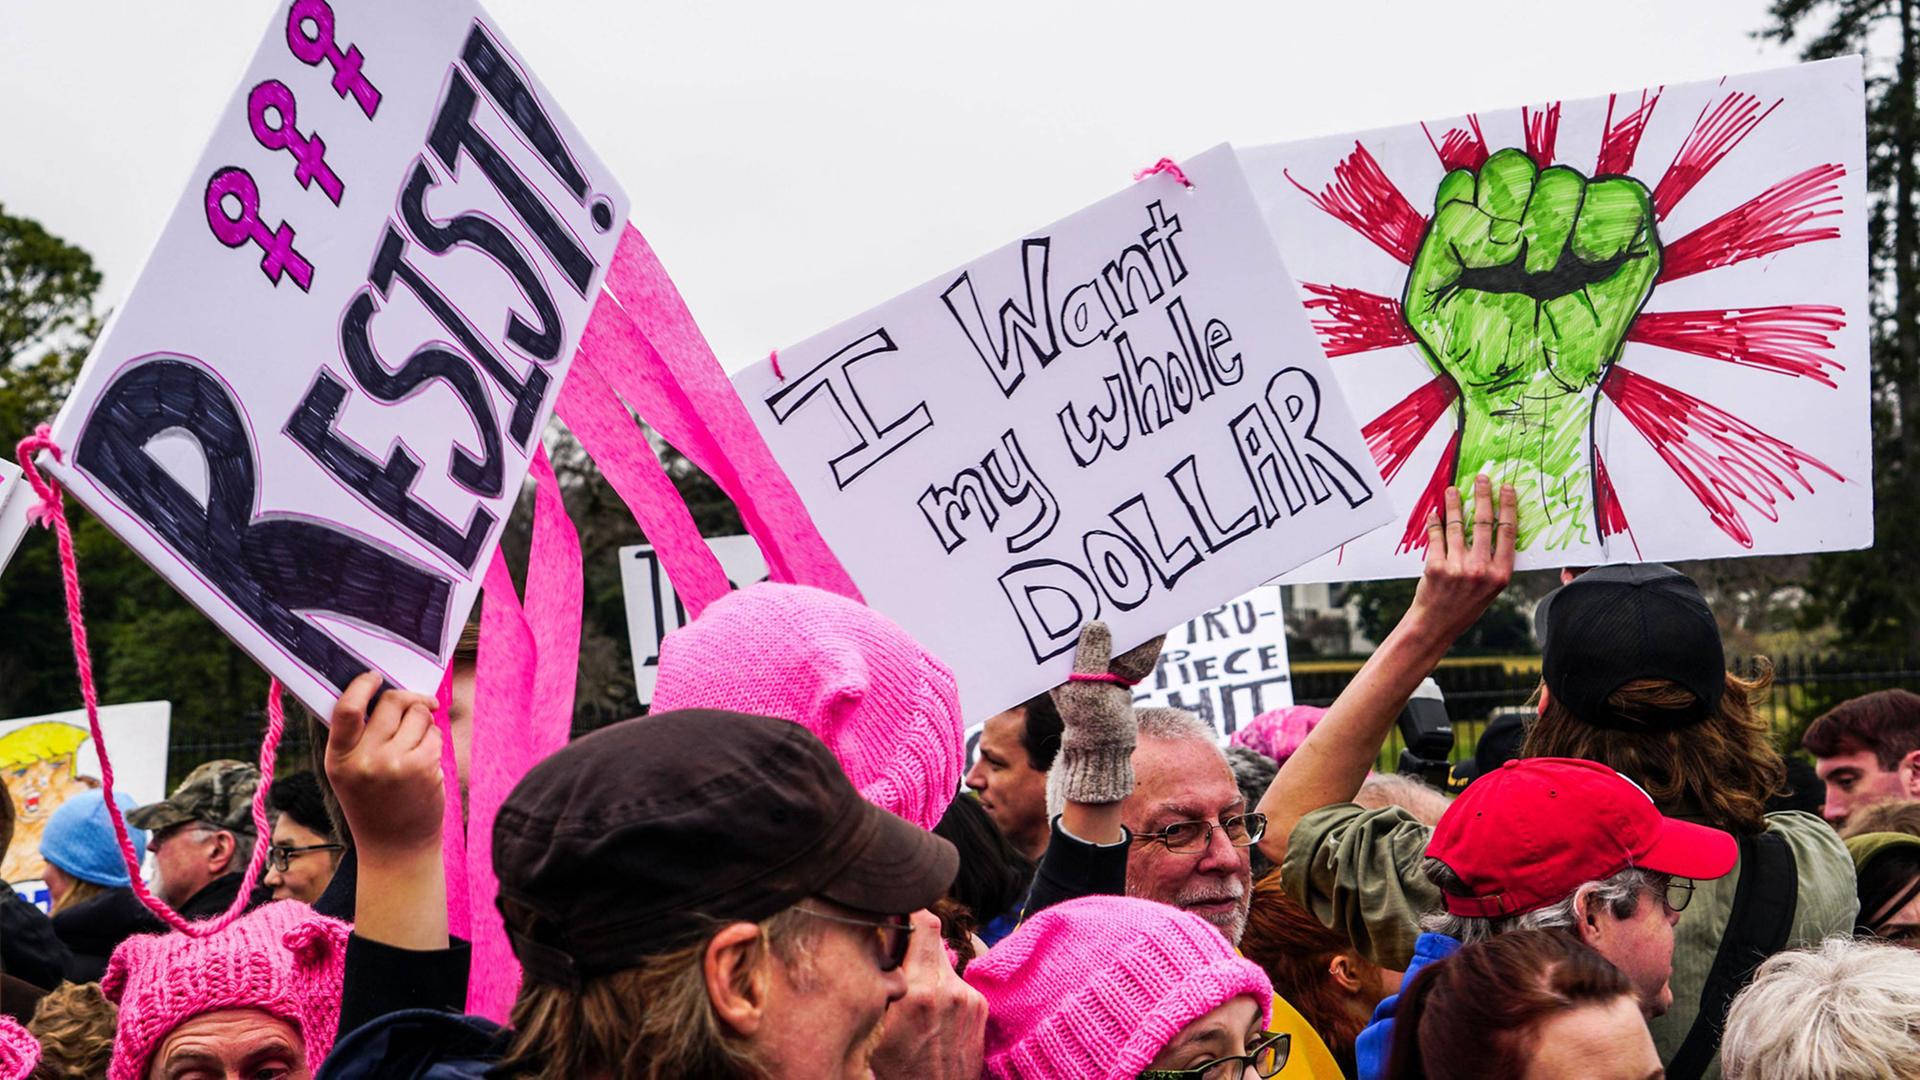 Demonstranten mit Slogans und pinkfarbenen Mützen beim Women's March, aufgenommen am 21.1.2017 in Washington, USA.